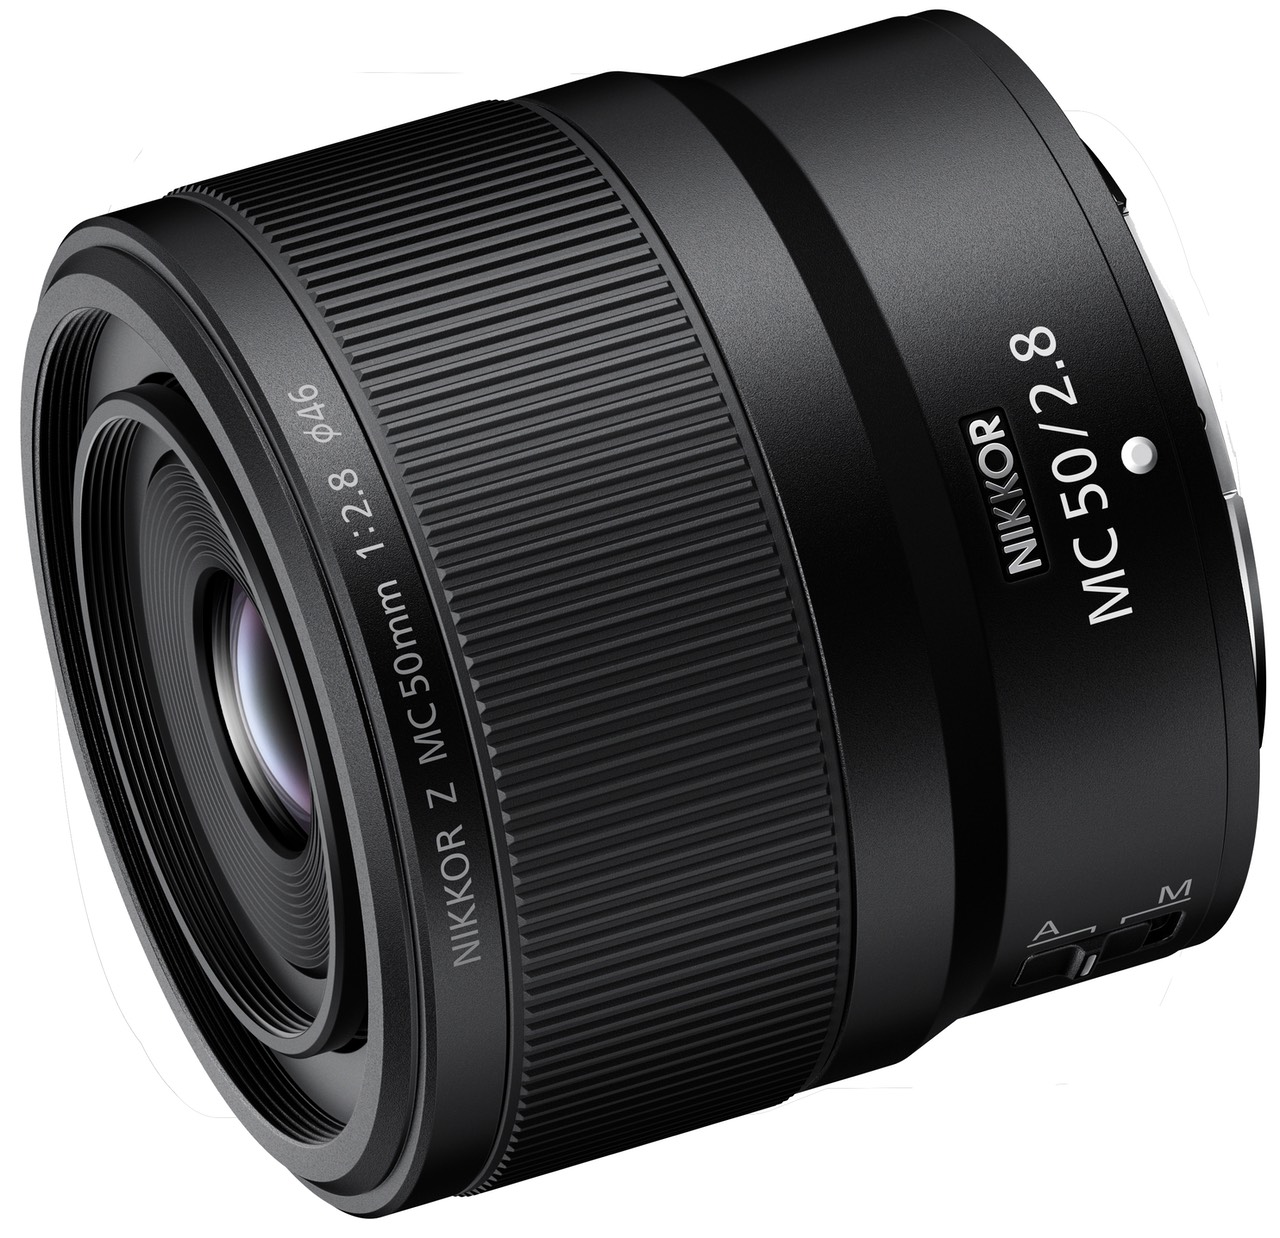 Nikon 50mm f/2.8 Macro Lens Review | Thom Hogan